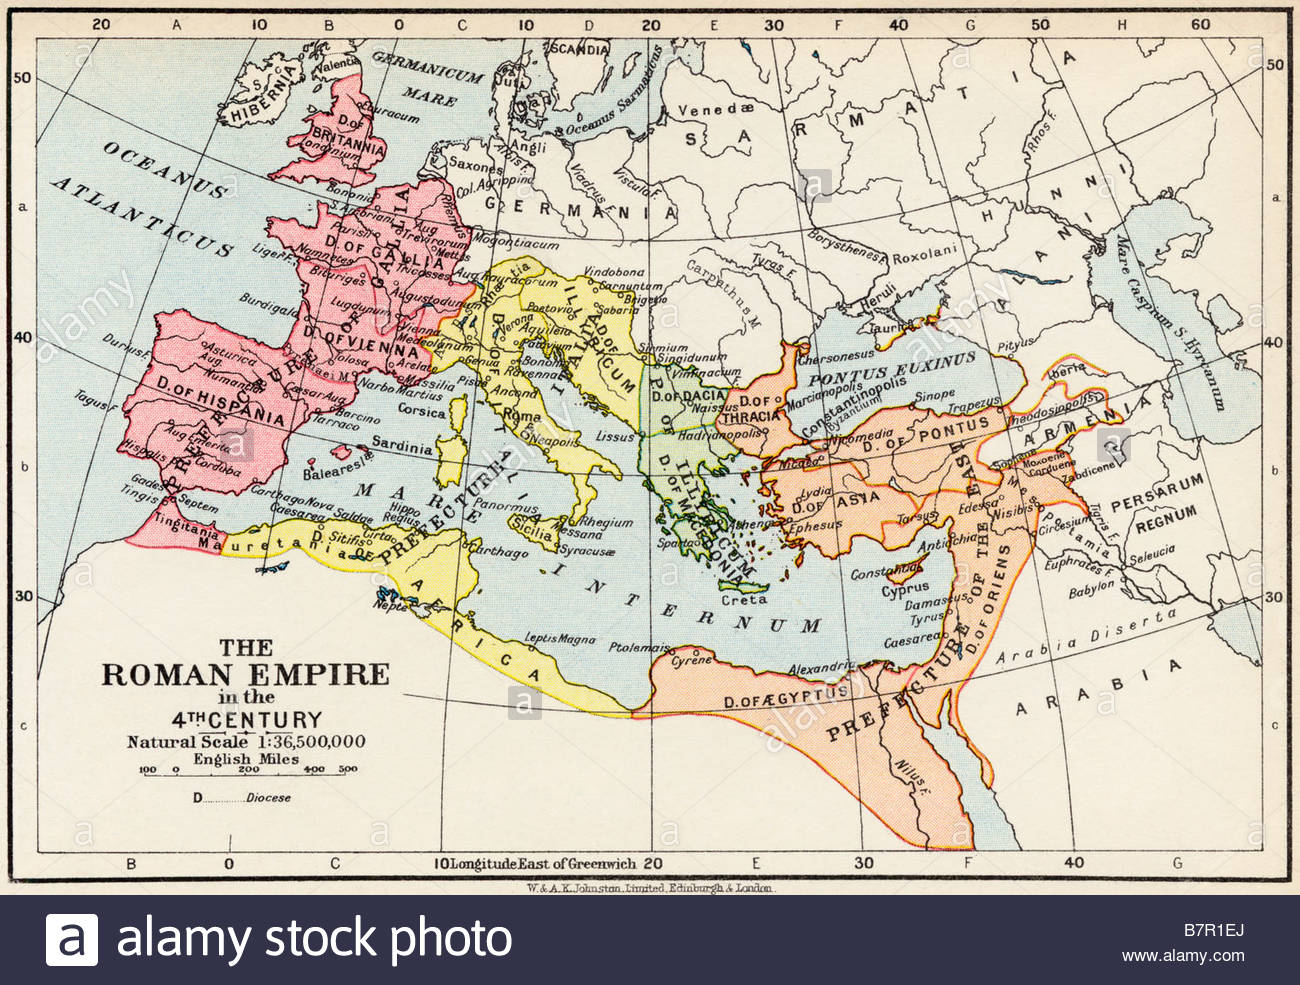 Mapa del imperio romano durante la cuarta centuria